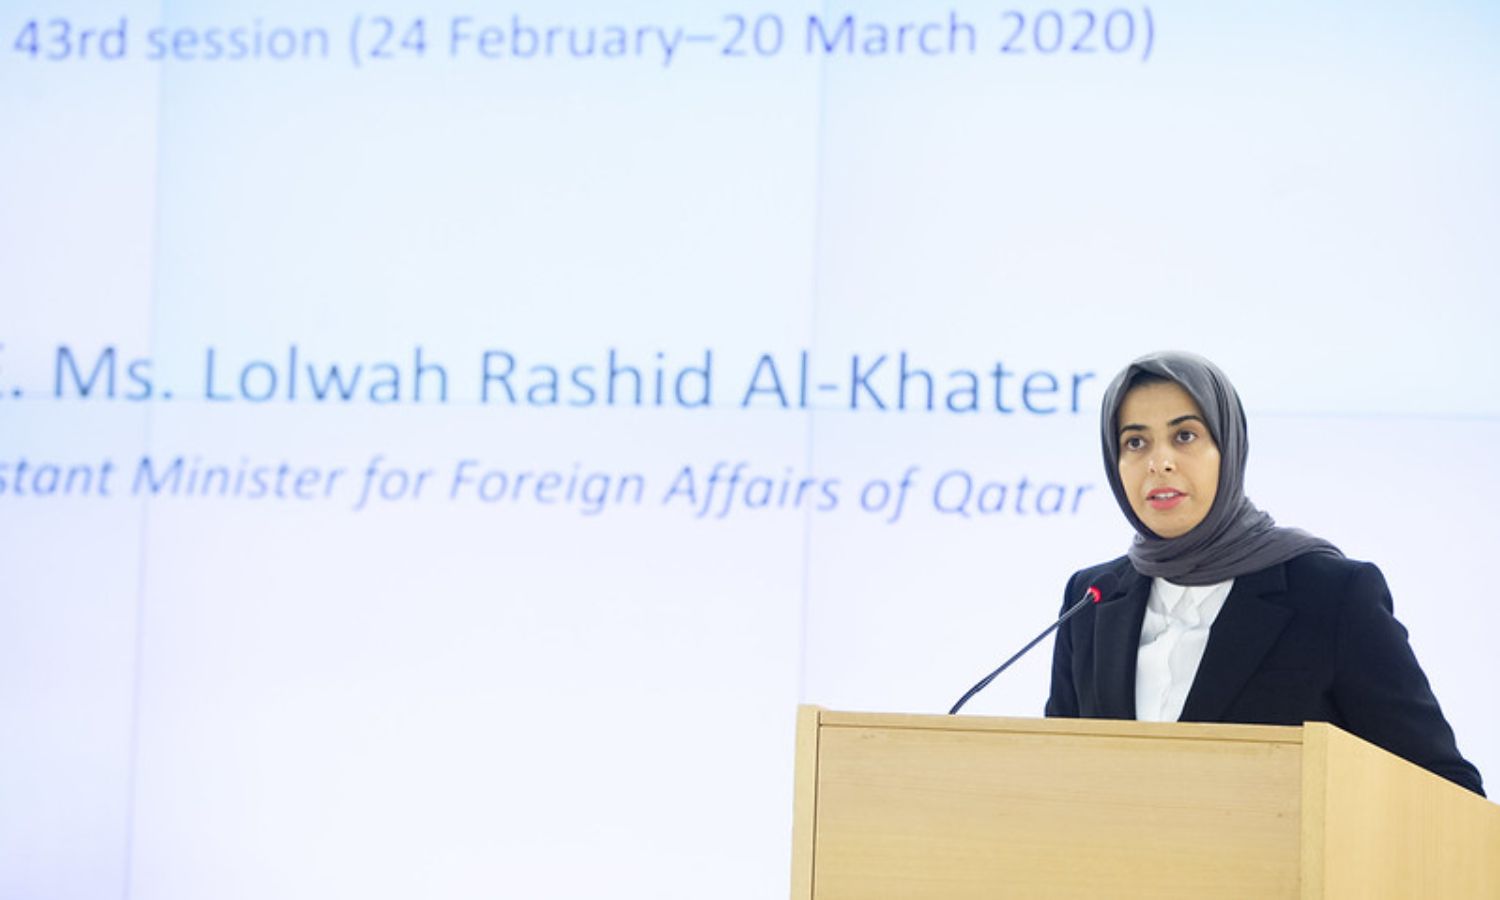 وزيرة الدولة القطرية للتعاون الدولي لولوة الخاطر وهي تلقي كلمة قطر في الجلسة الـ43 لمجلس حقوق الإنسان - 24 من شباط 2020 (مكتب الأمم المتحدة في جنيف)